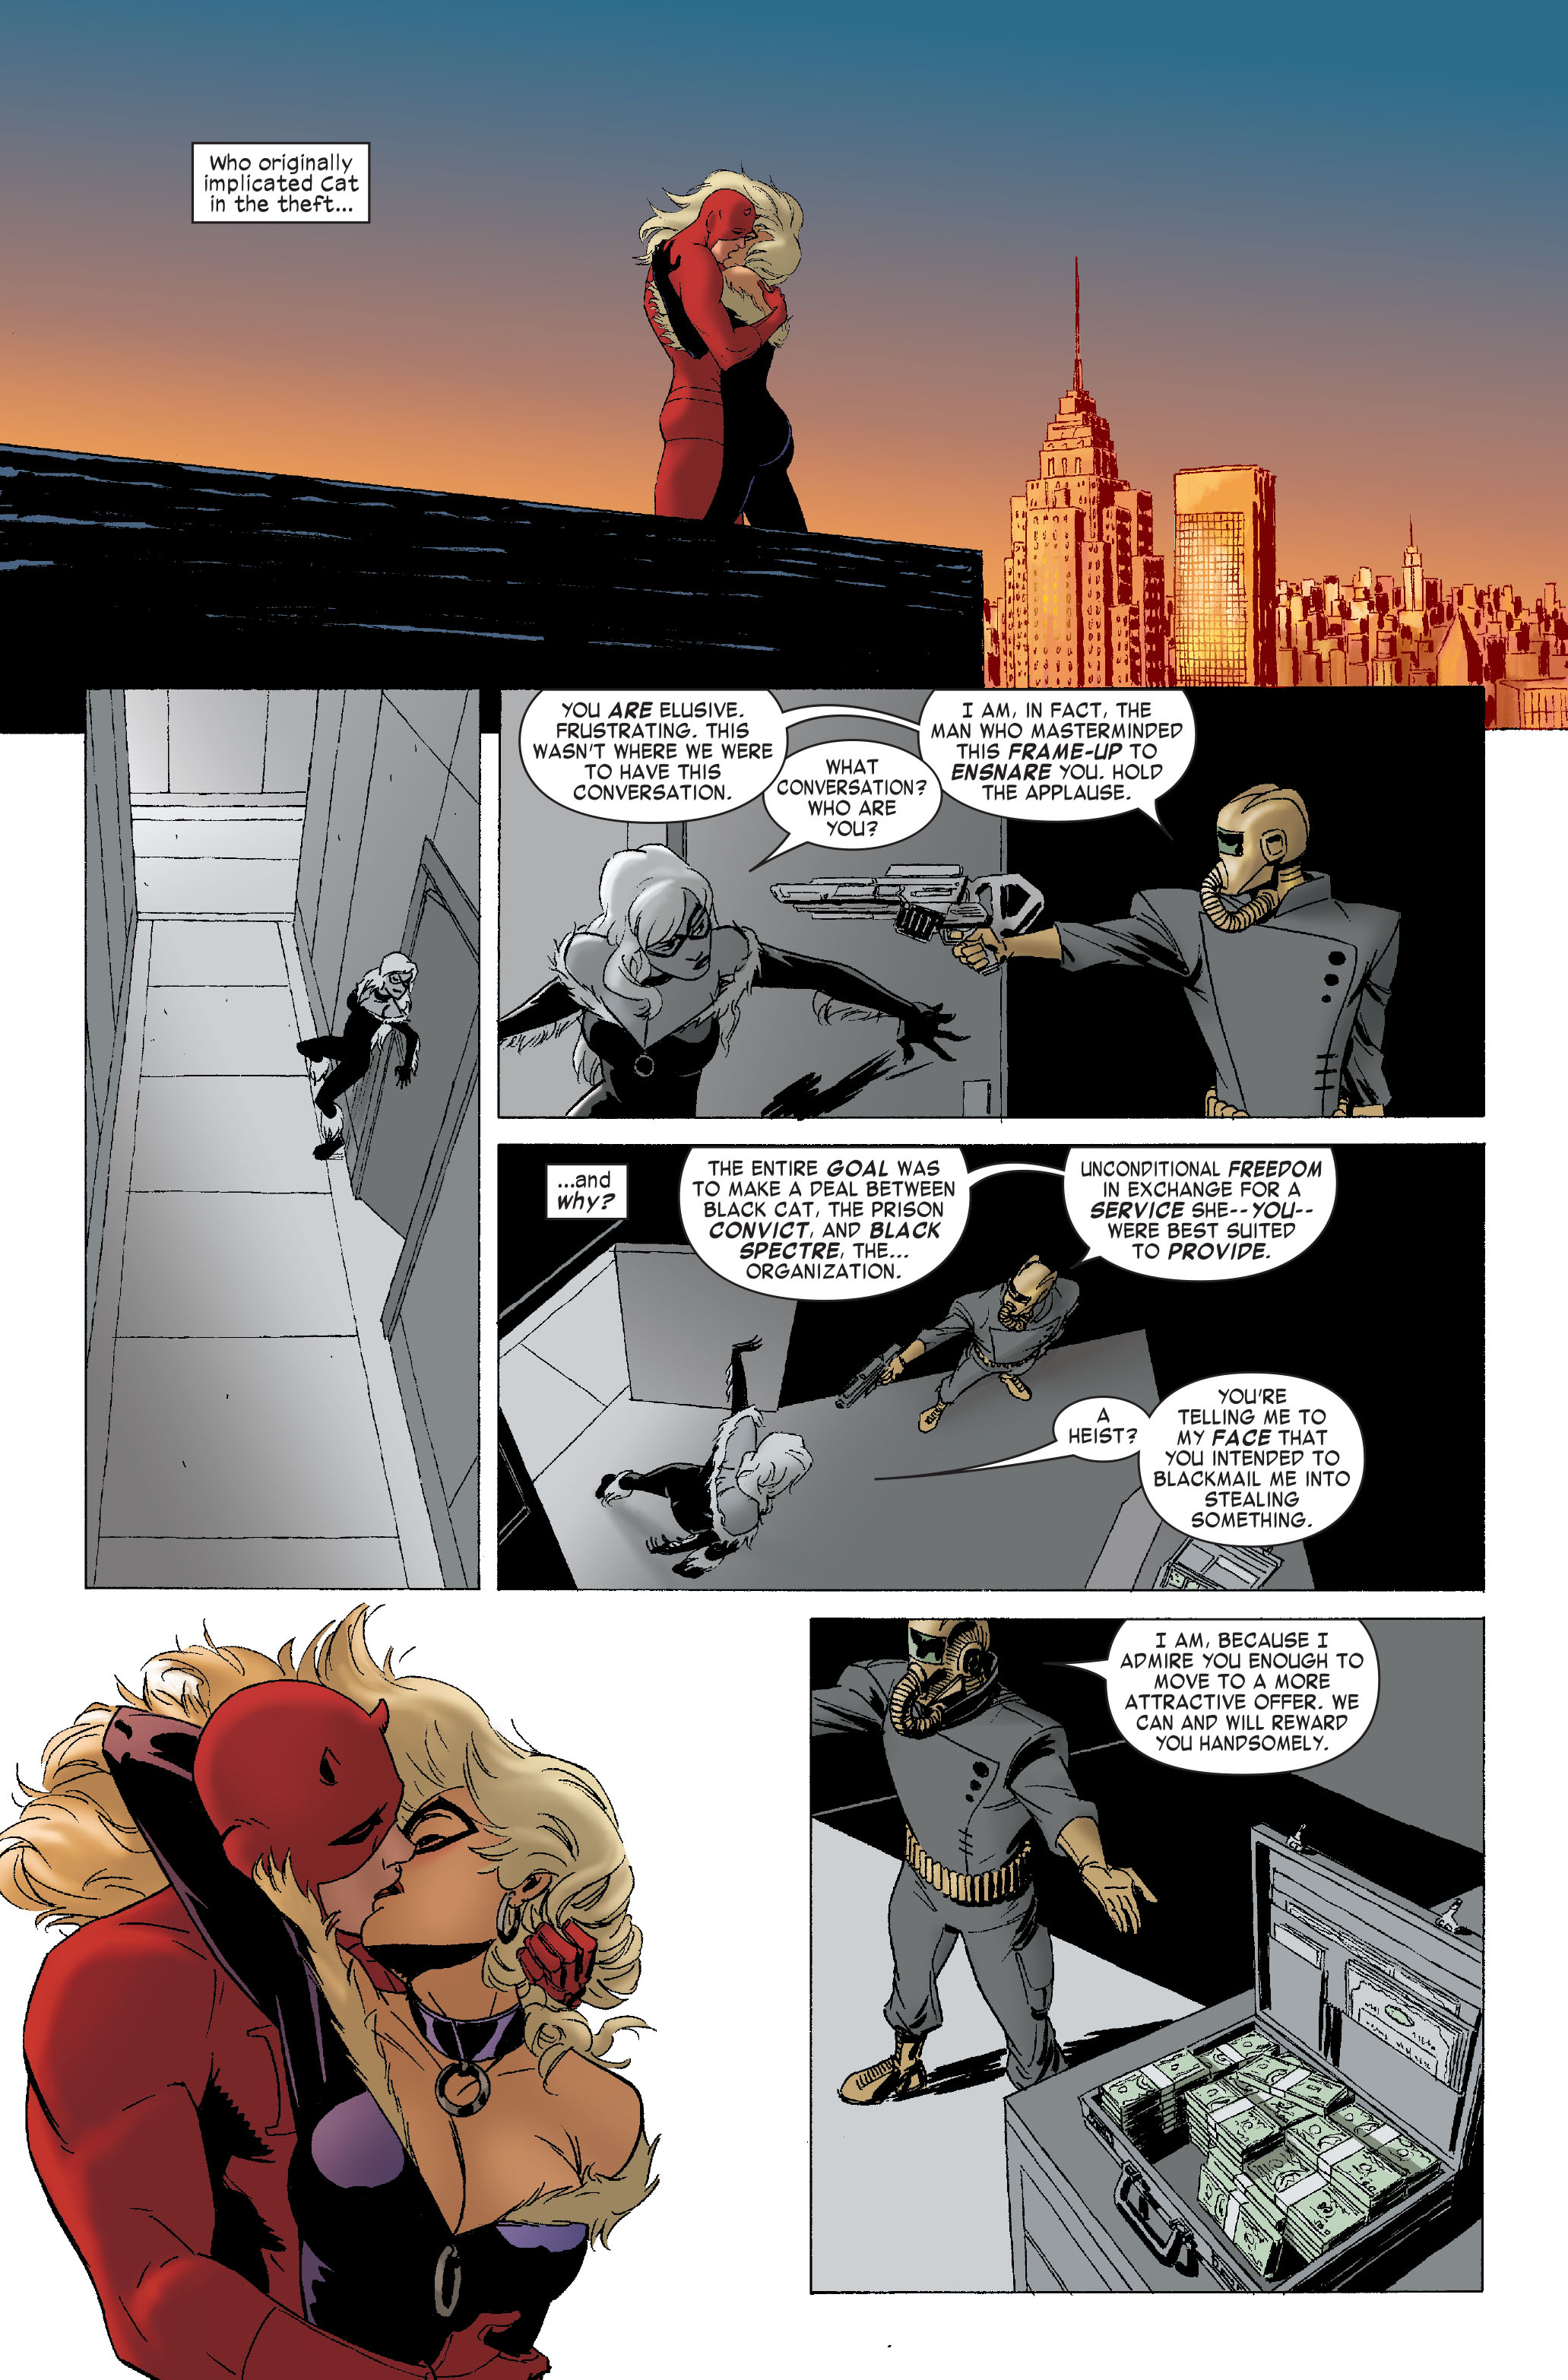 Daredevil Black Cat - Daredevil 2011 Issue 8 | Viewcomic reading comics online for ...